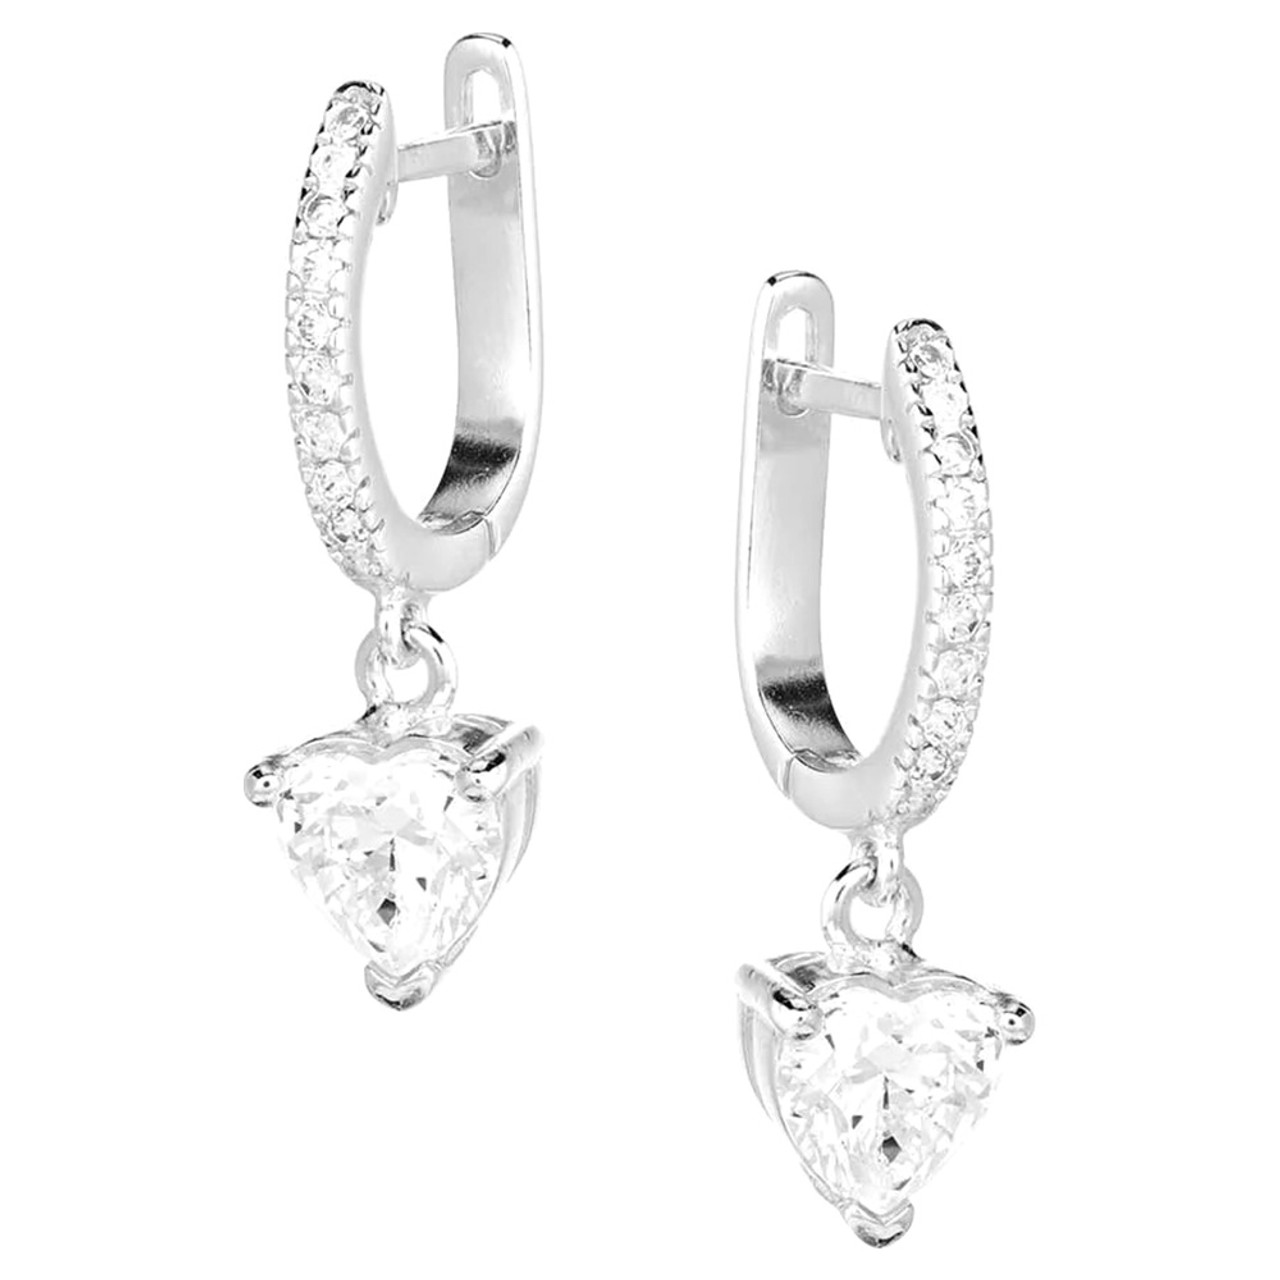 Heart Shaped Blue Swarovski Crystal Silver Earrings